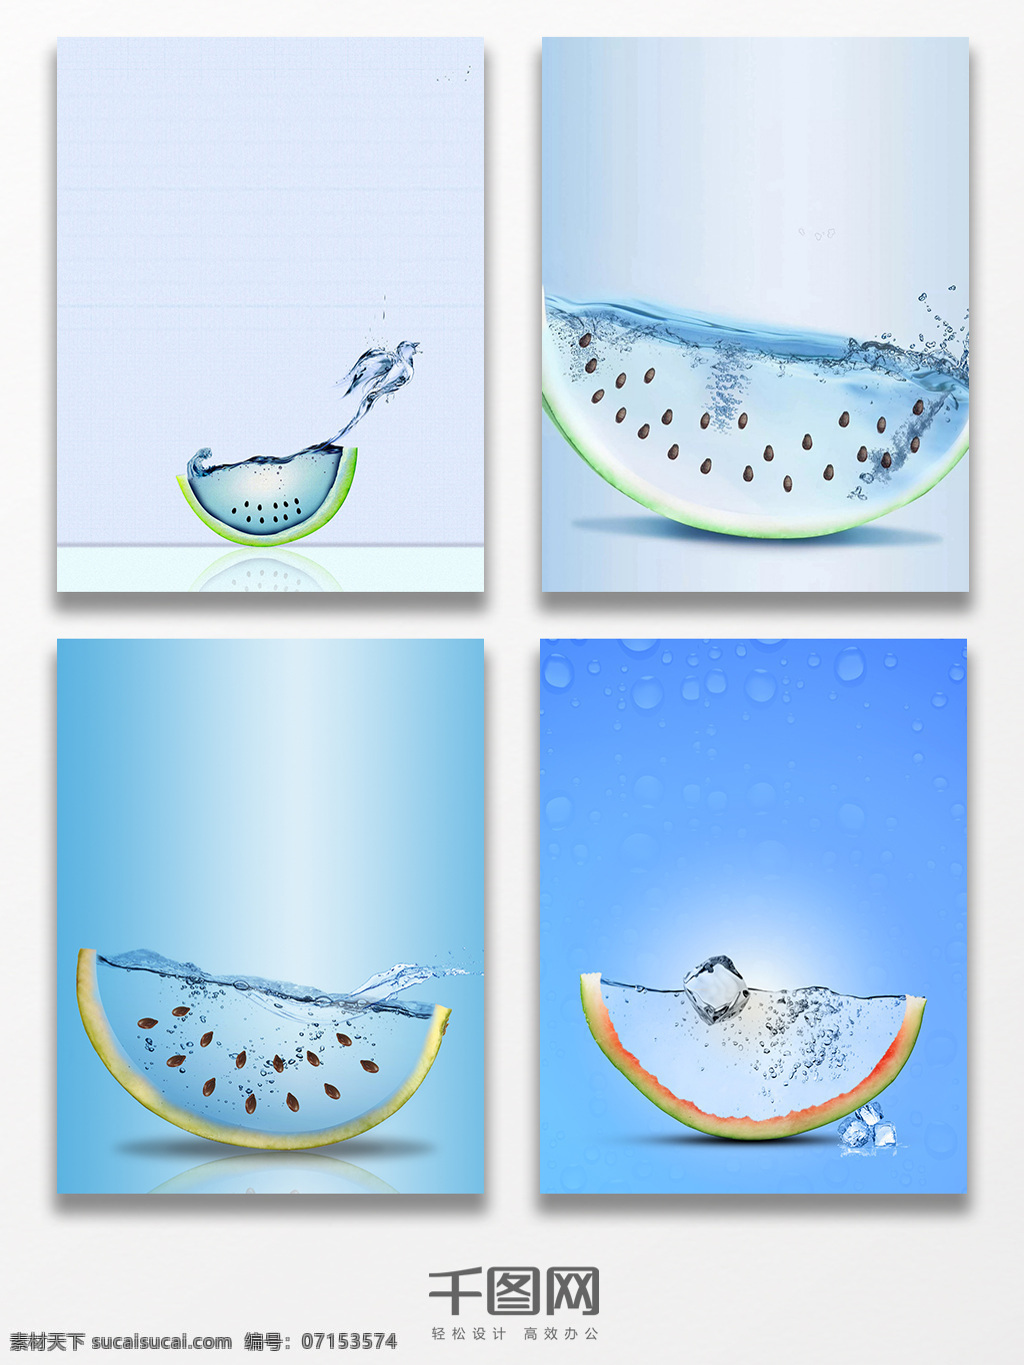 夏日 浅蓝色 水果 背景 广告 海报 清爽 海风 西瓜 海水 海洋 创意